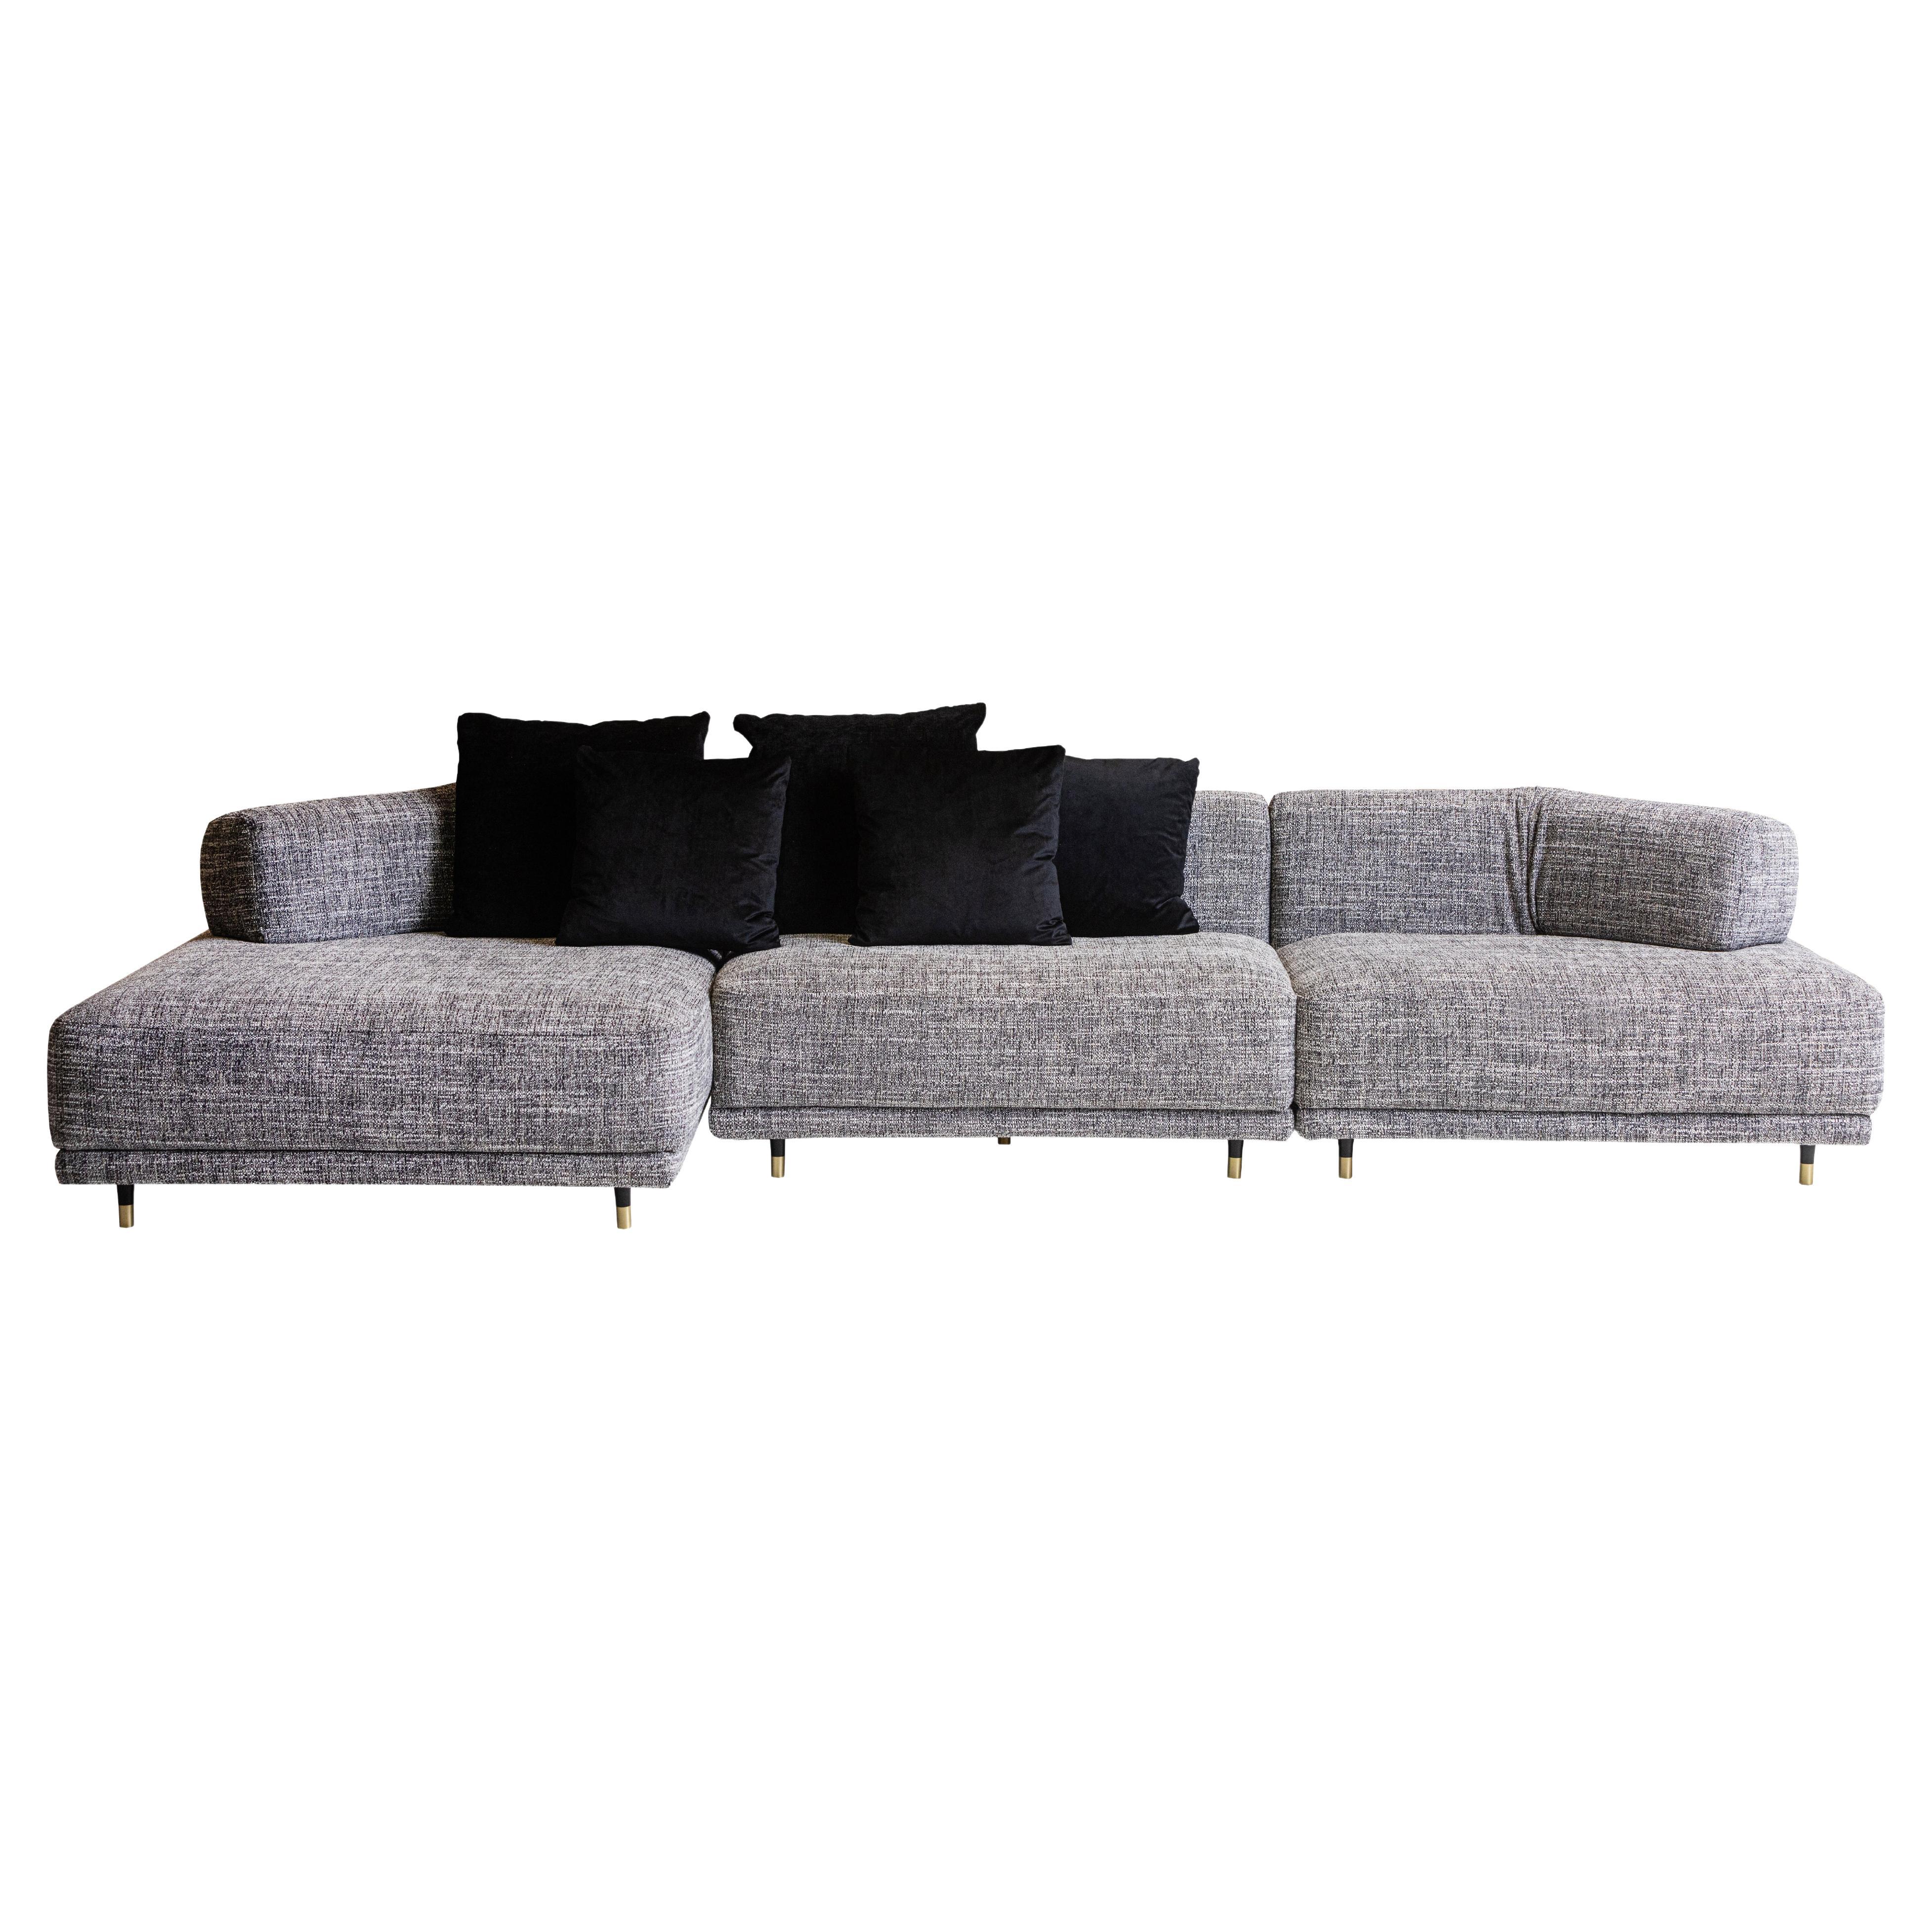 SOLO modular sofa in gray fabric. By Legame Italia For Sale